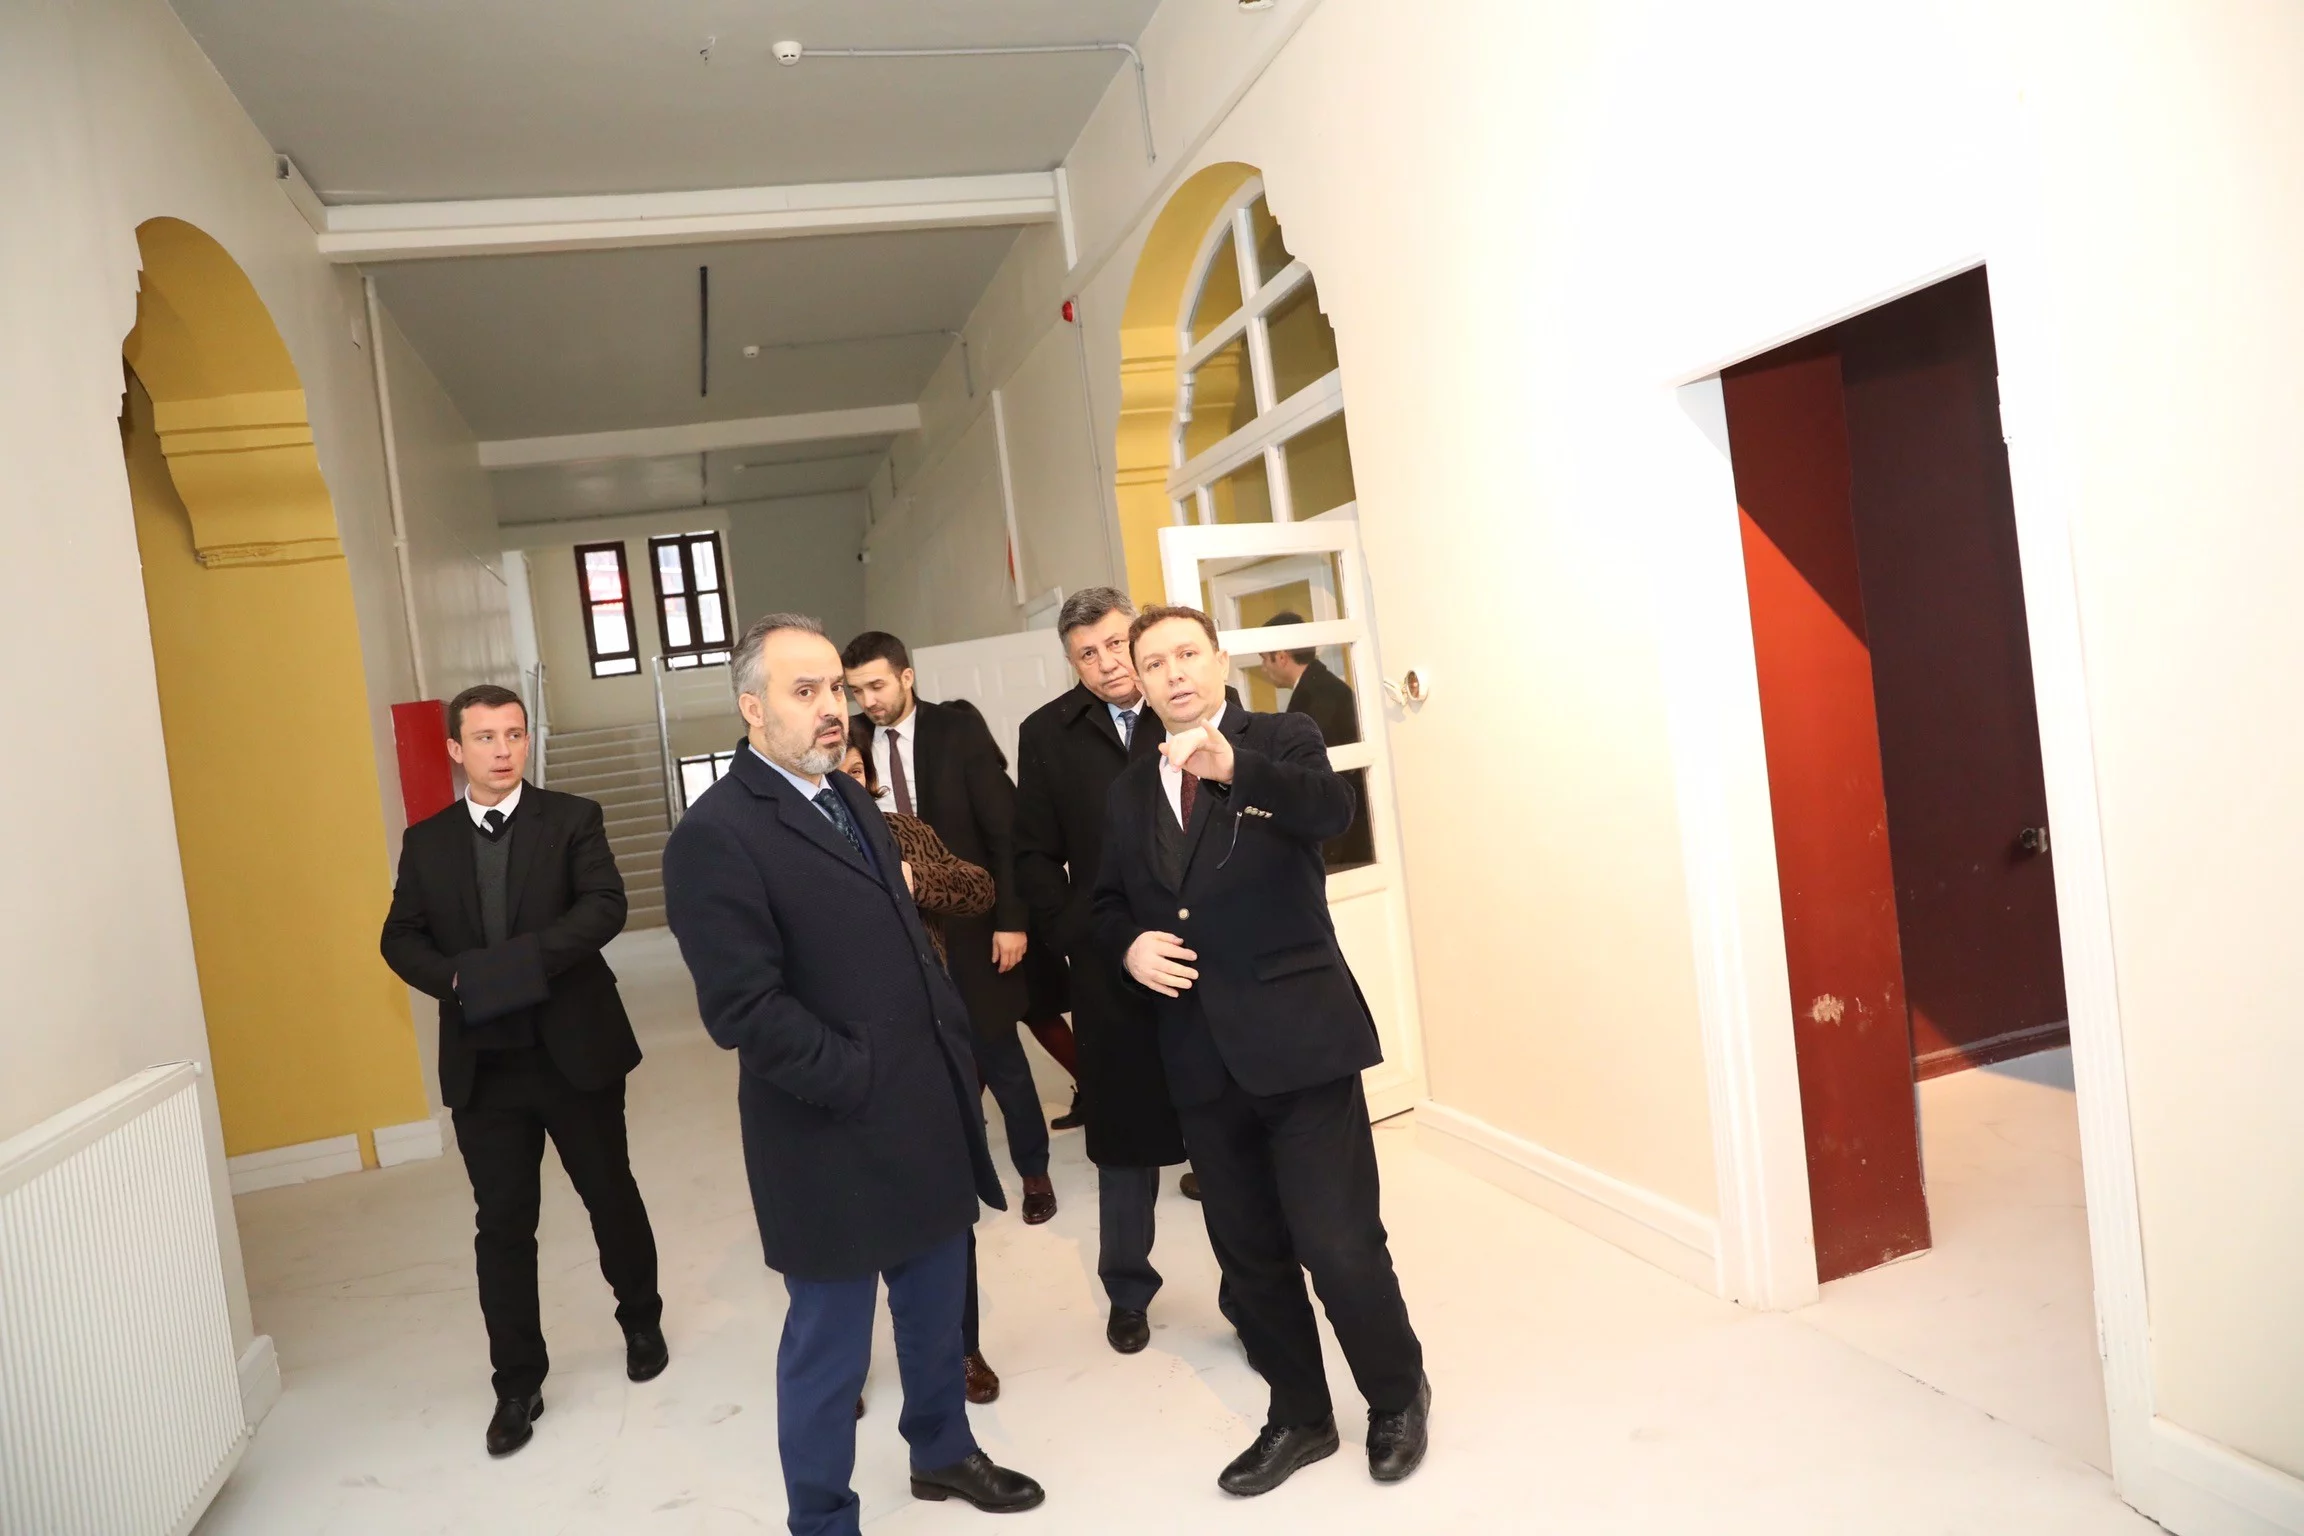 Bursa'da müzeler tek çatı altında toplanıyor